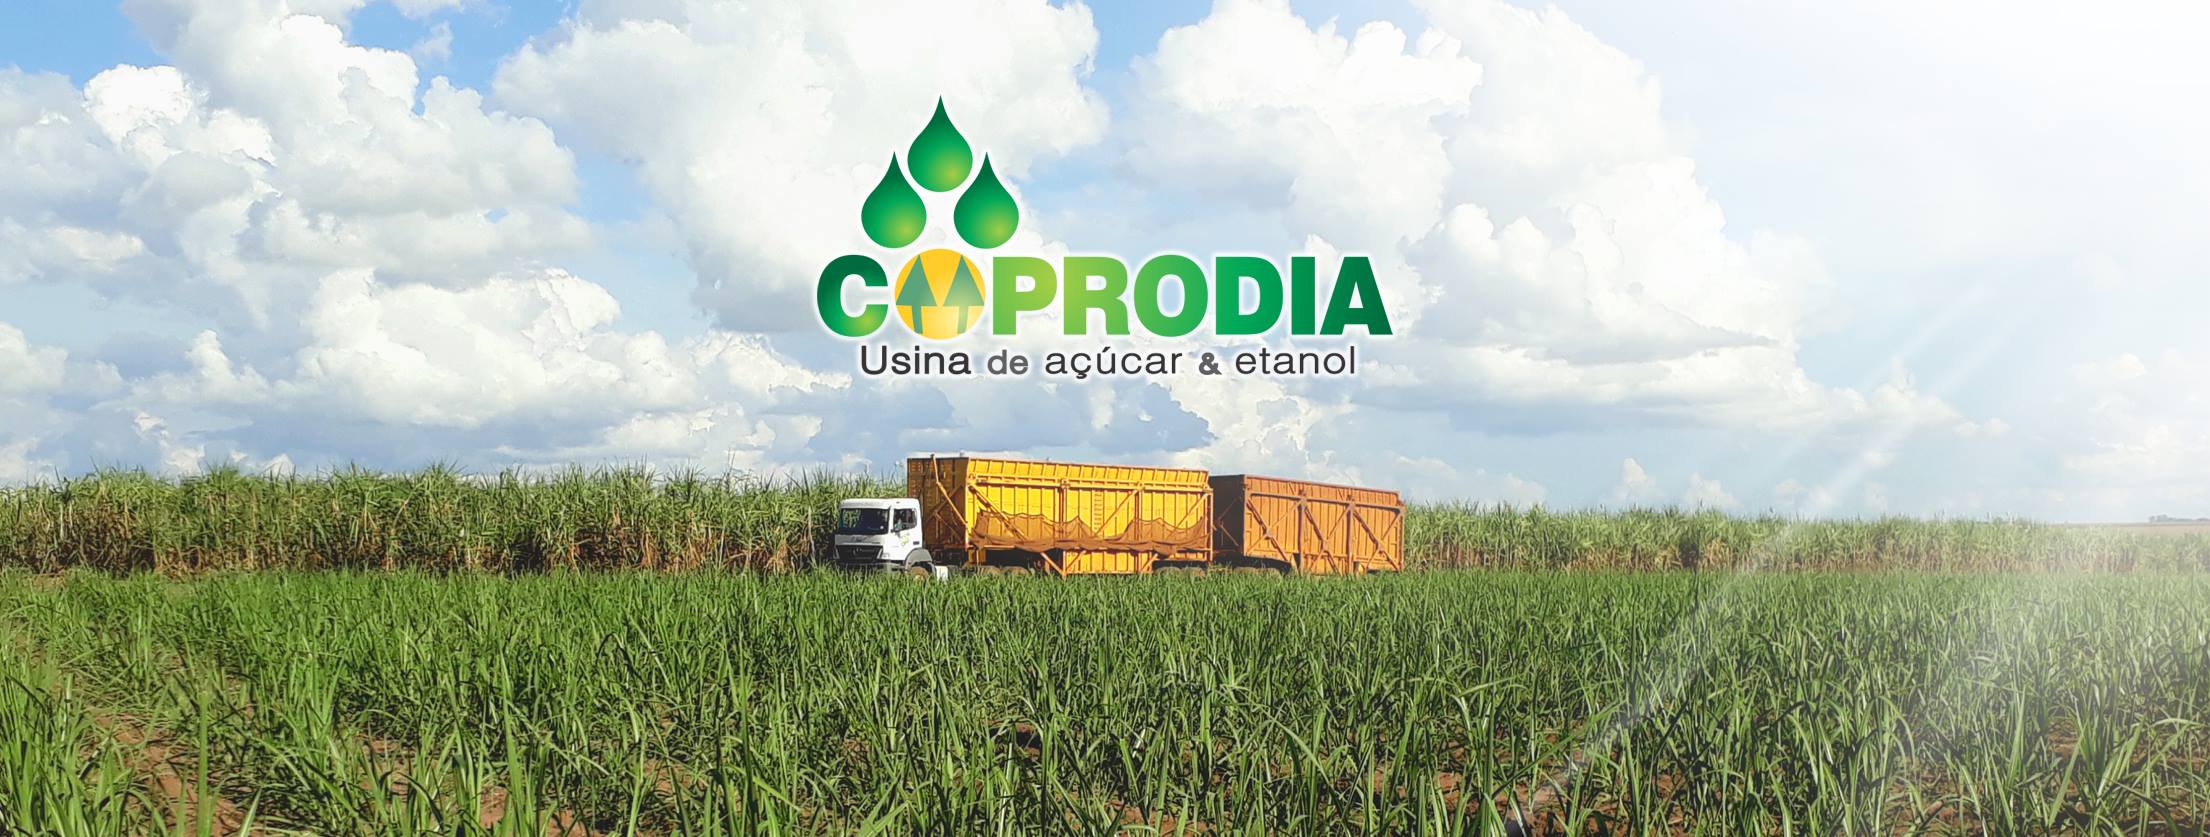 Coprodia: responsabilidade social e ambiental contribuem para os negócios